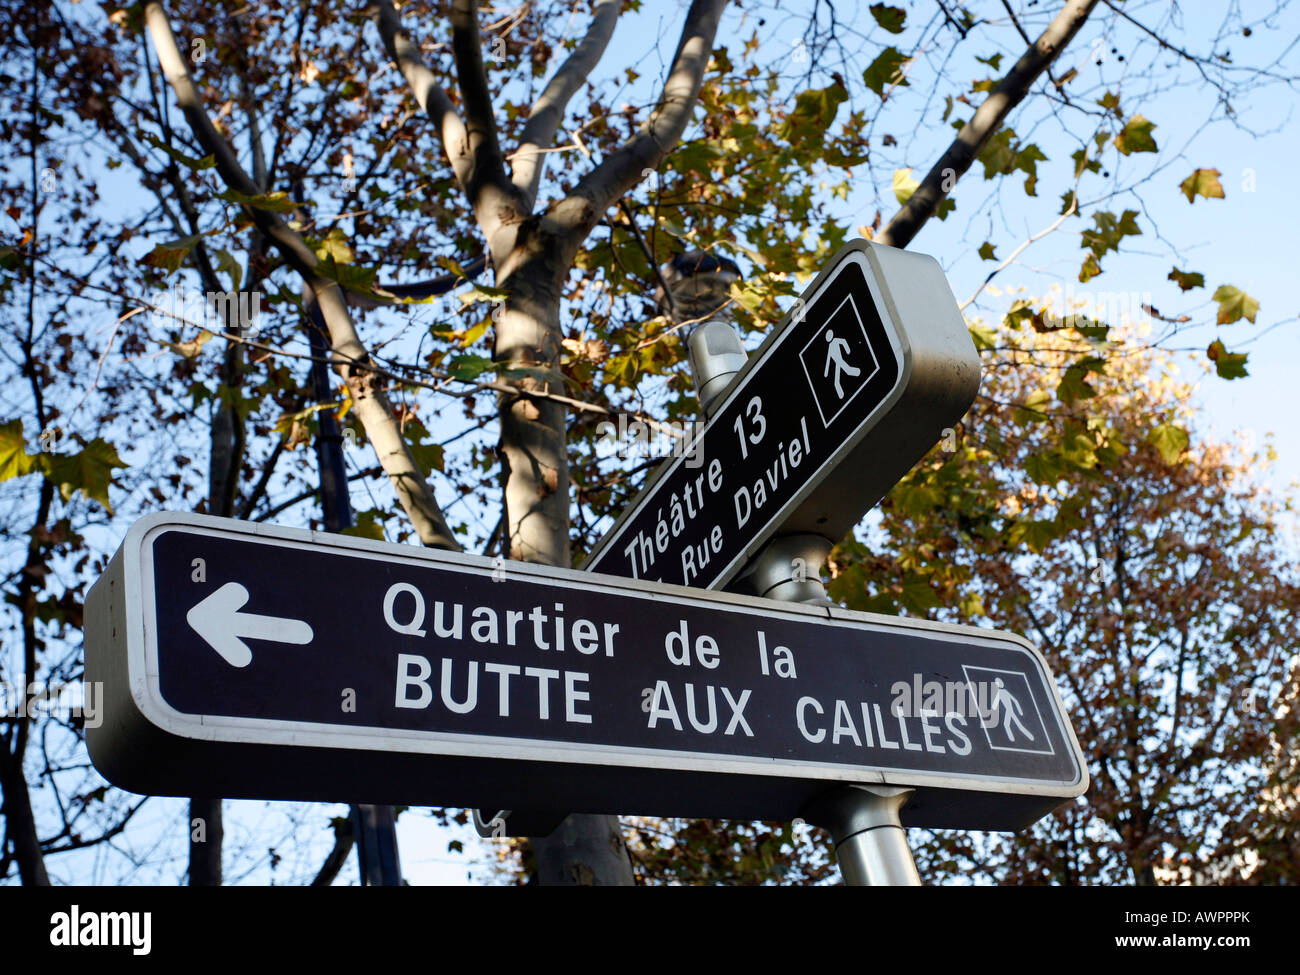 Street sign, Quartier de la Butte aux Cailles, 13th arrondissement, Paris, France, Europe Stock Photo